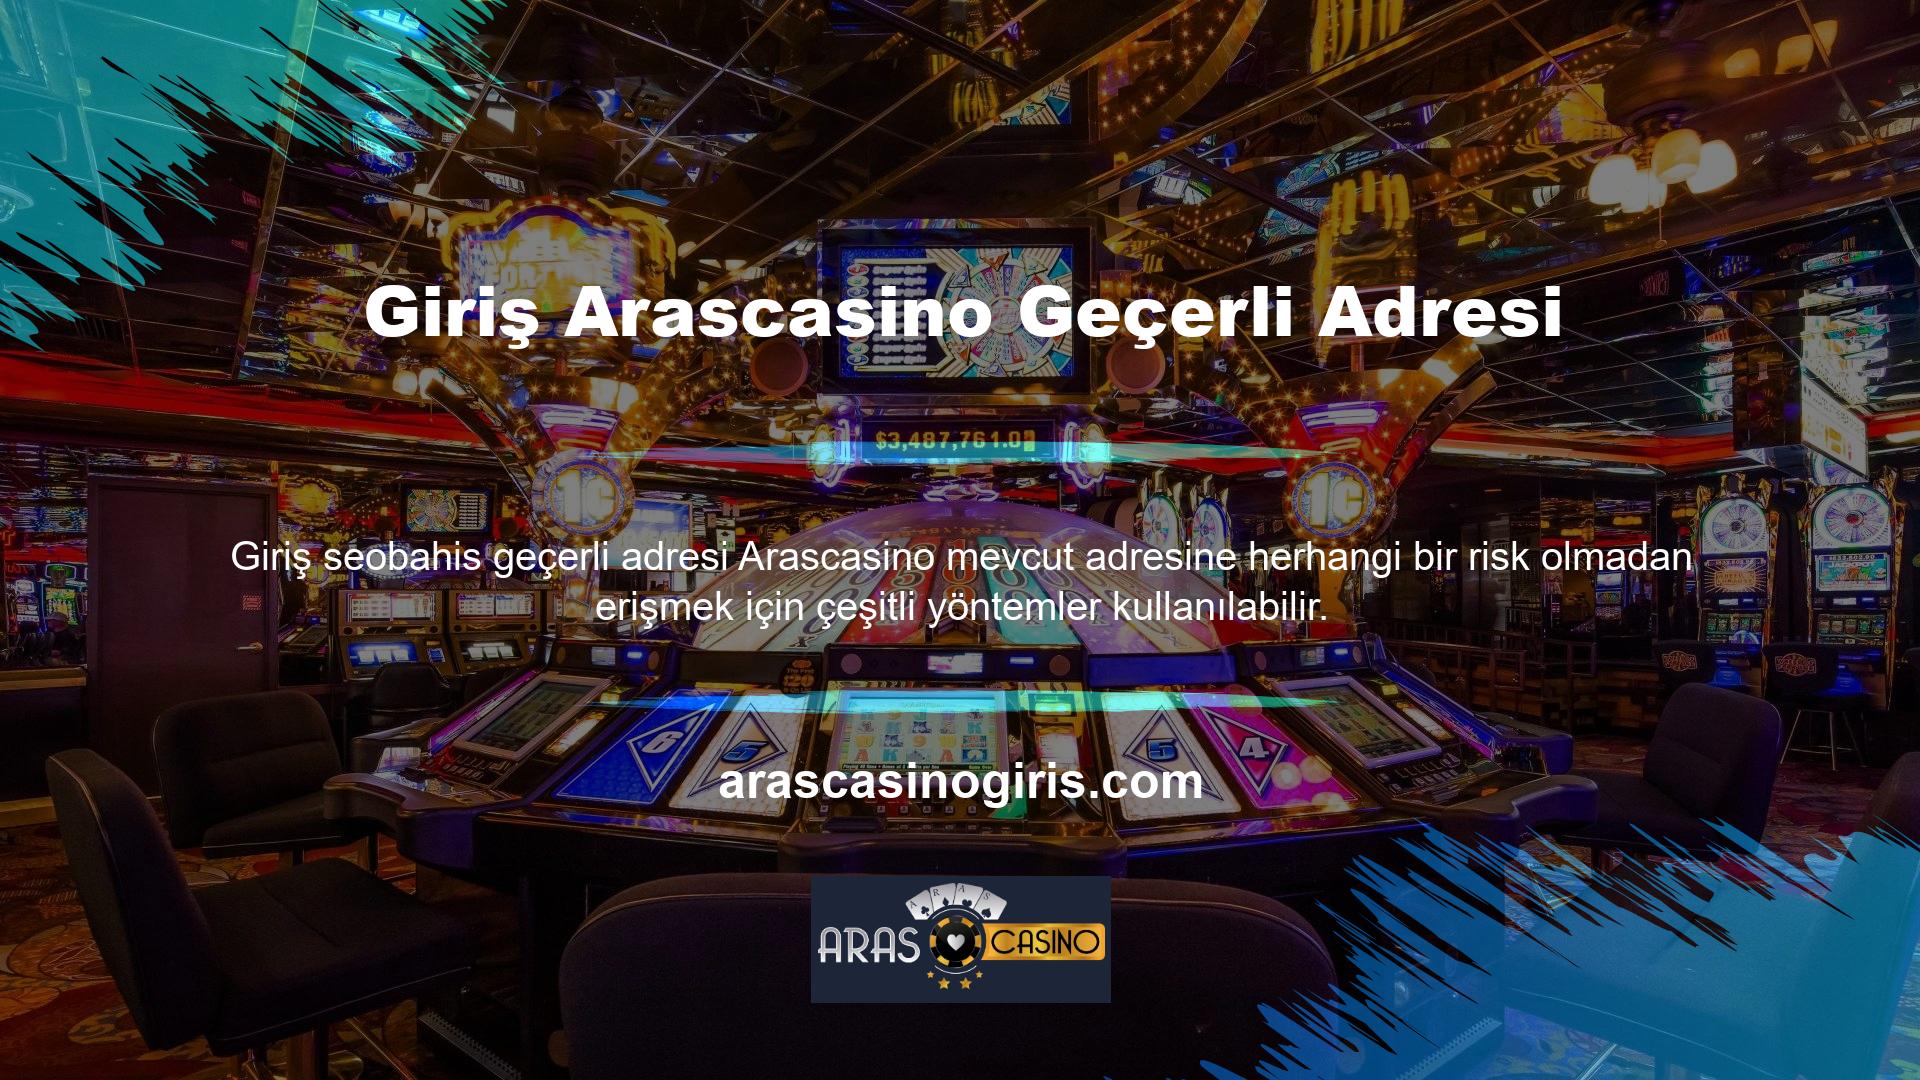 Arascasino şu anki adresi, özellikle son zamanlarda sitenin resmi sosyal medya hesaplarına erişim sağlanan adrestir